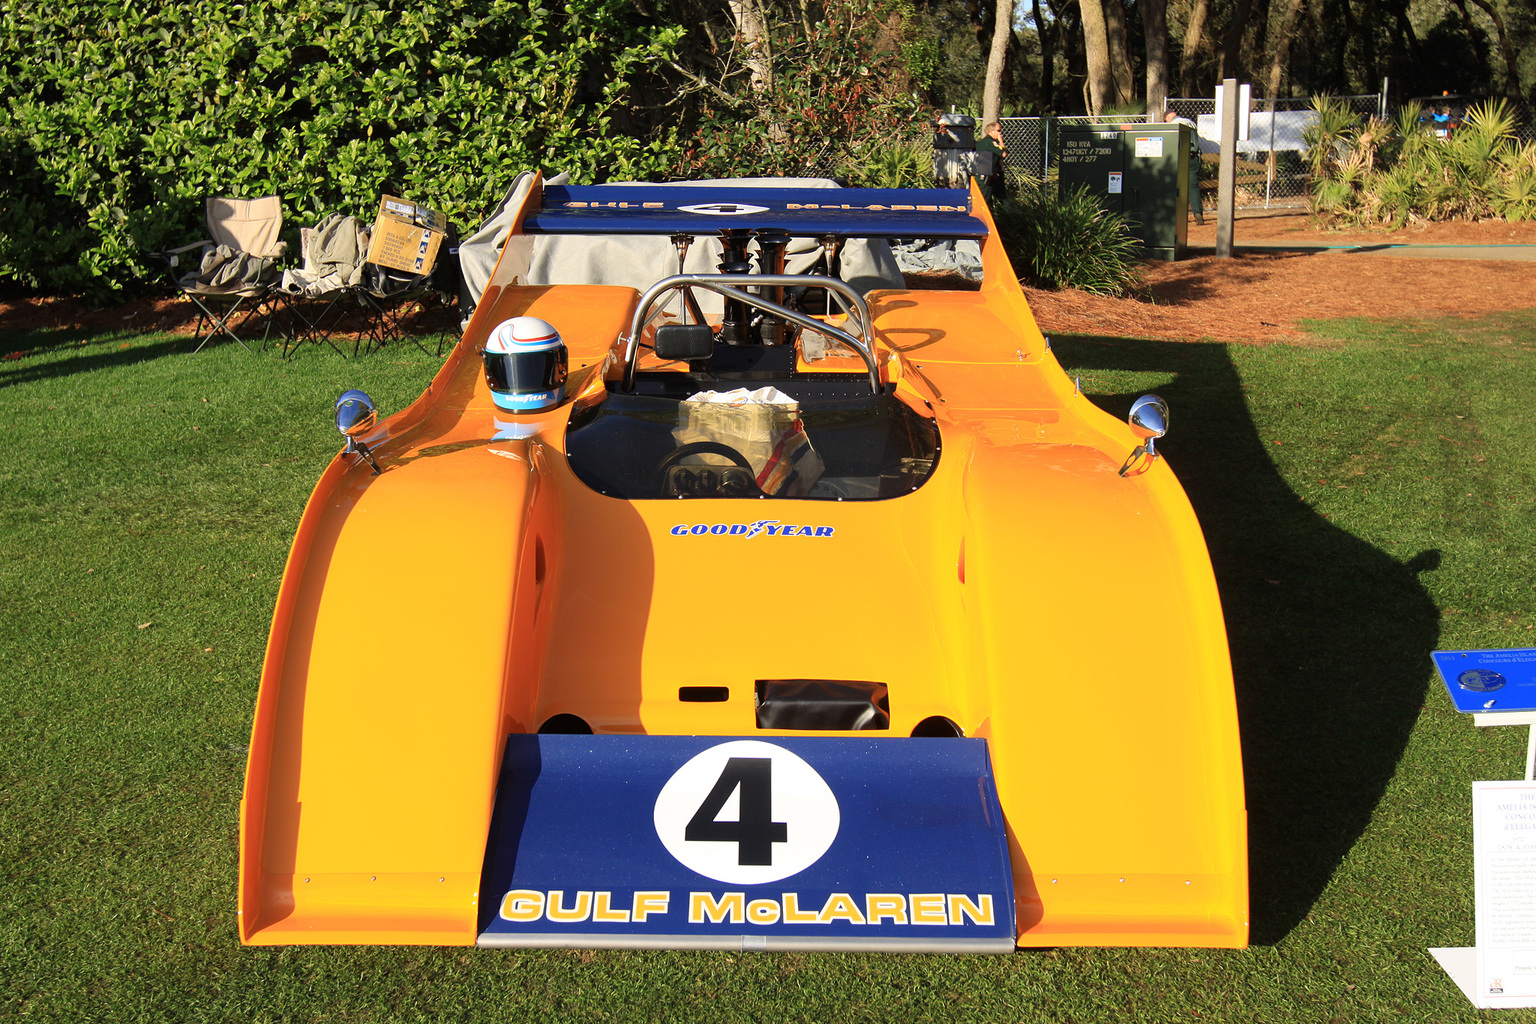 1972 McLaren M20 Gallery